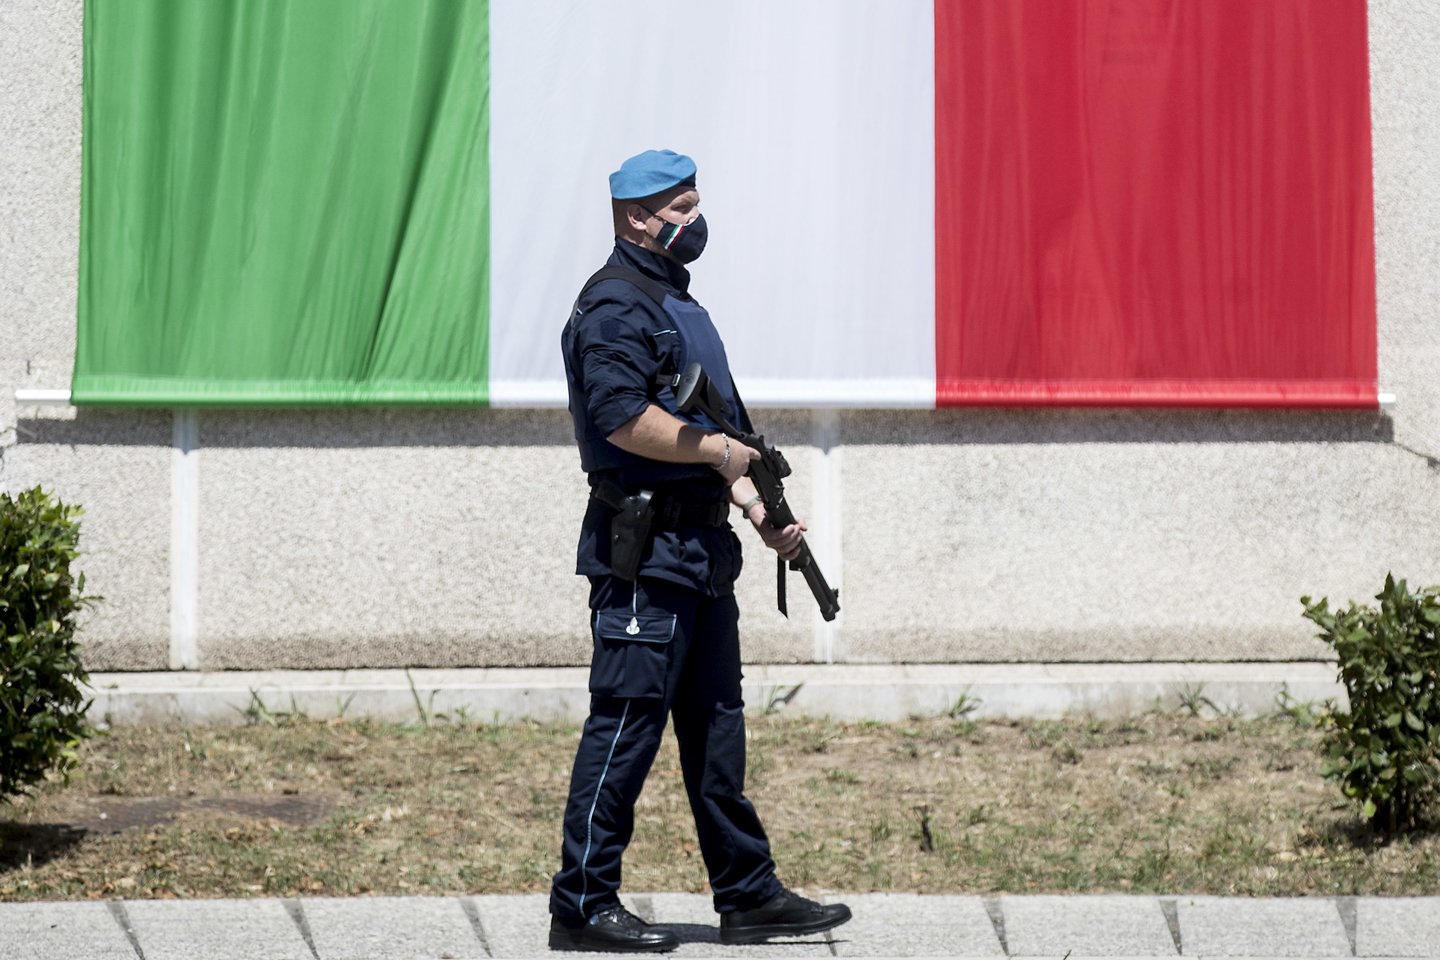  Italijos policija sulaikė mafijos narius, veikusios sveikatos sektoriuje.<br> ZUMAPRESS/Scanpix nuotr.